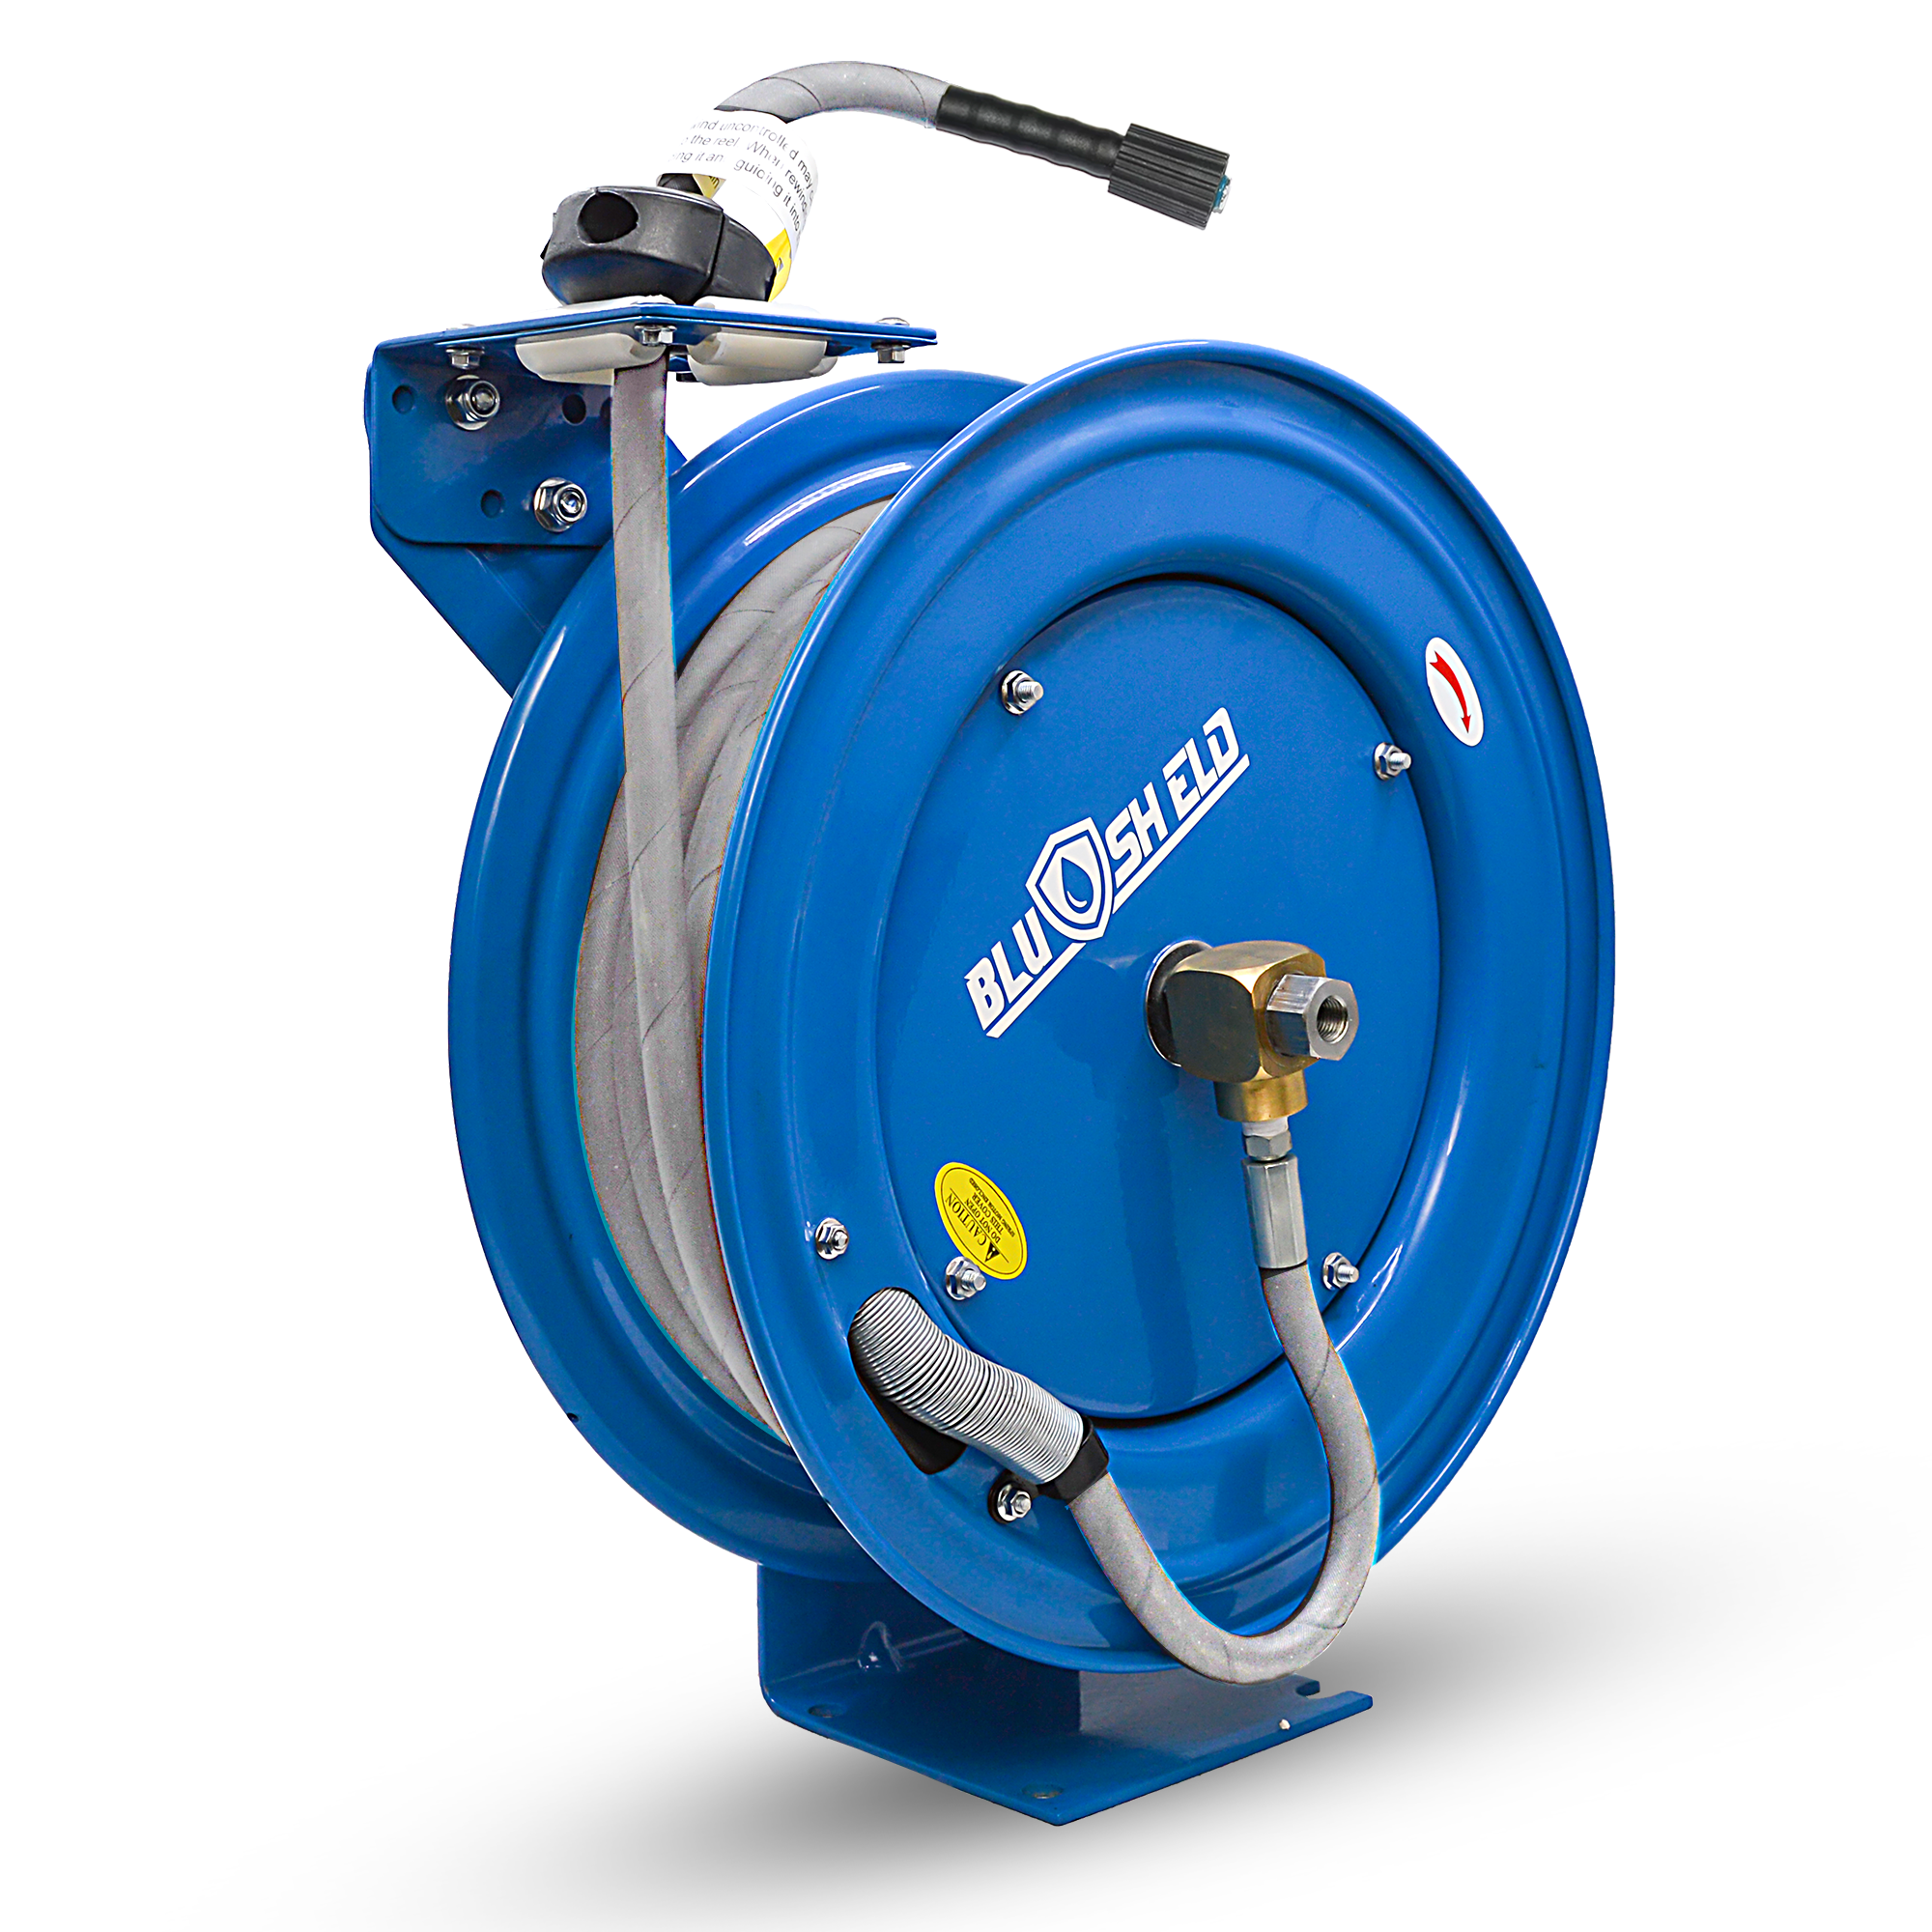 Retractable Fuel hose reel – TheBlueHose